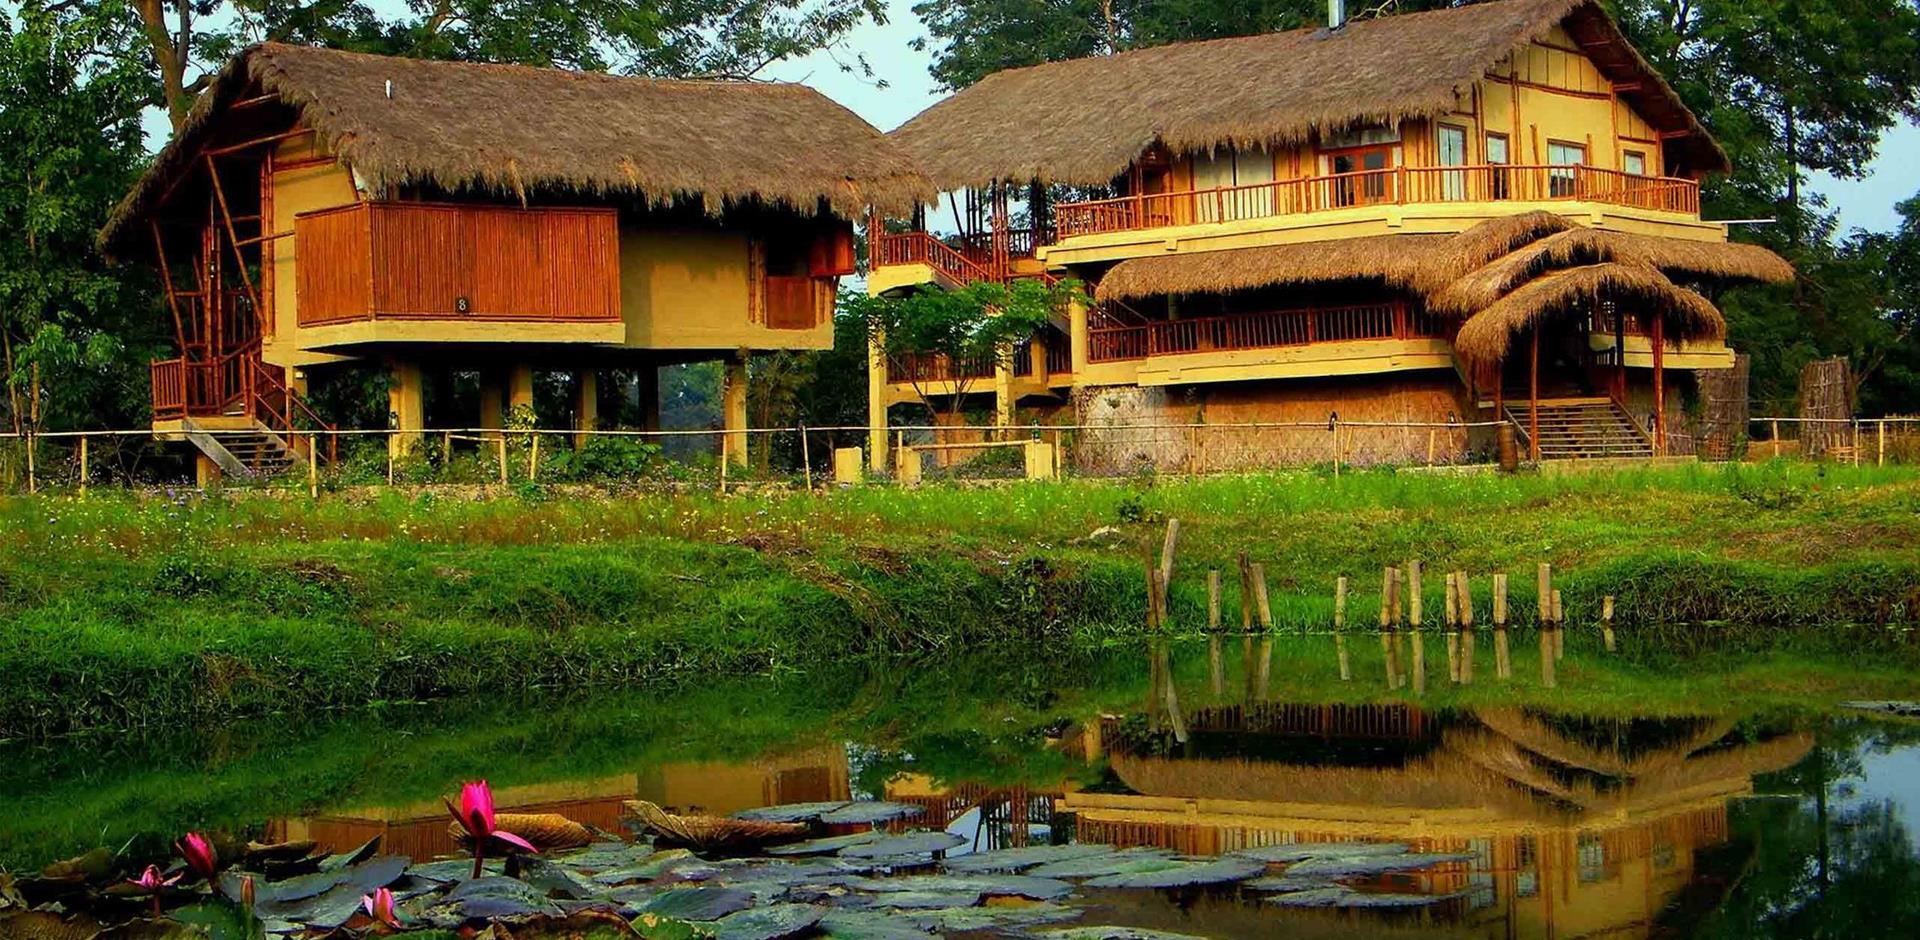 Diphlu River Lodge, India